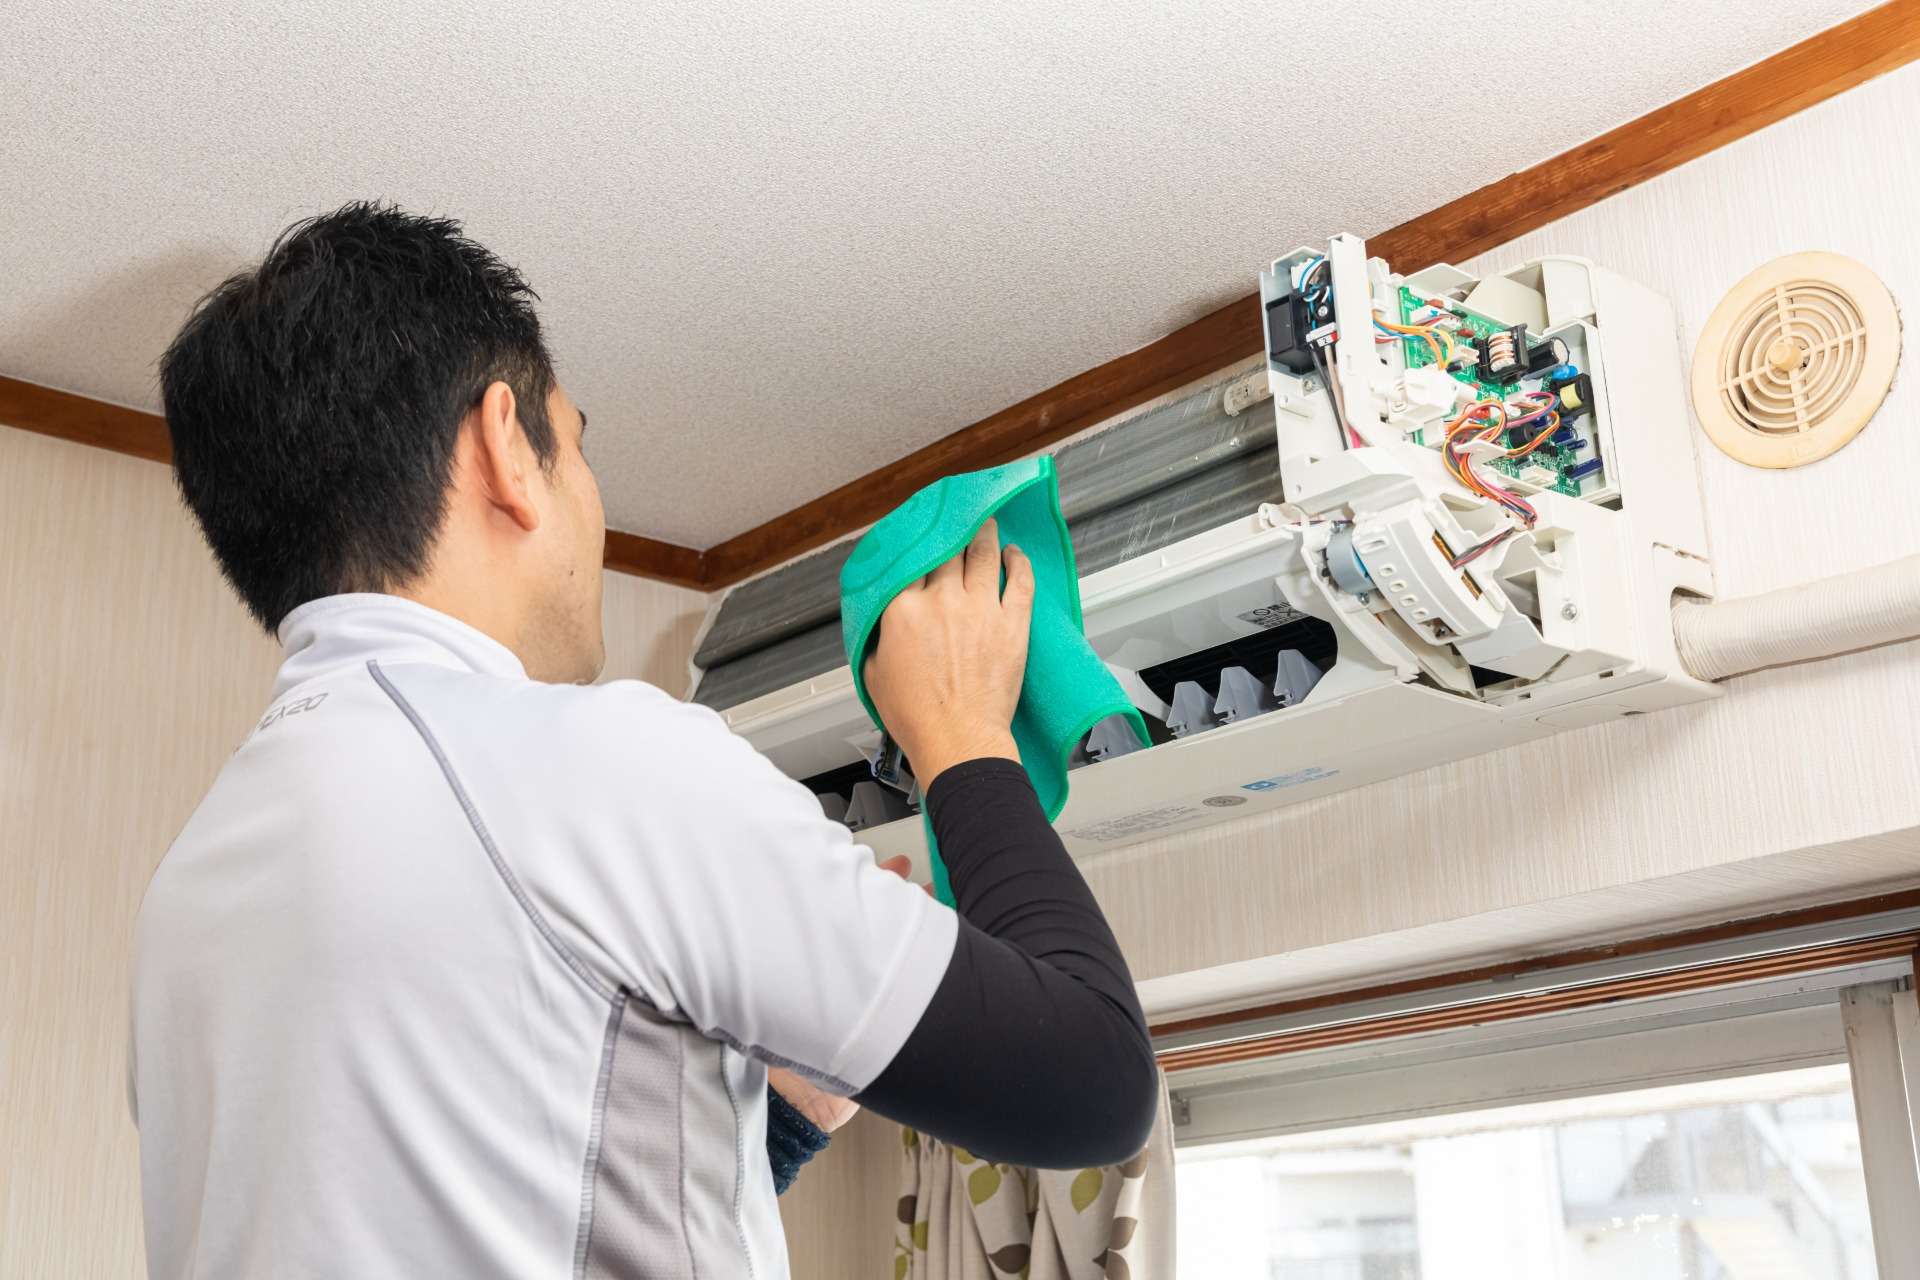 神戸から効率より安全重視のエアコンクリーニングをお届けします